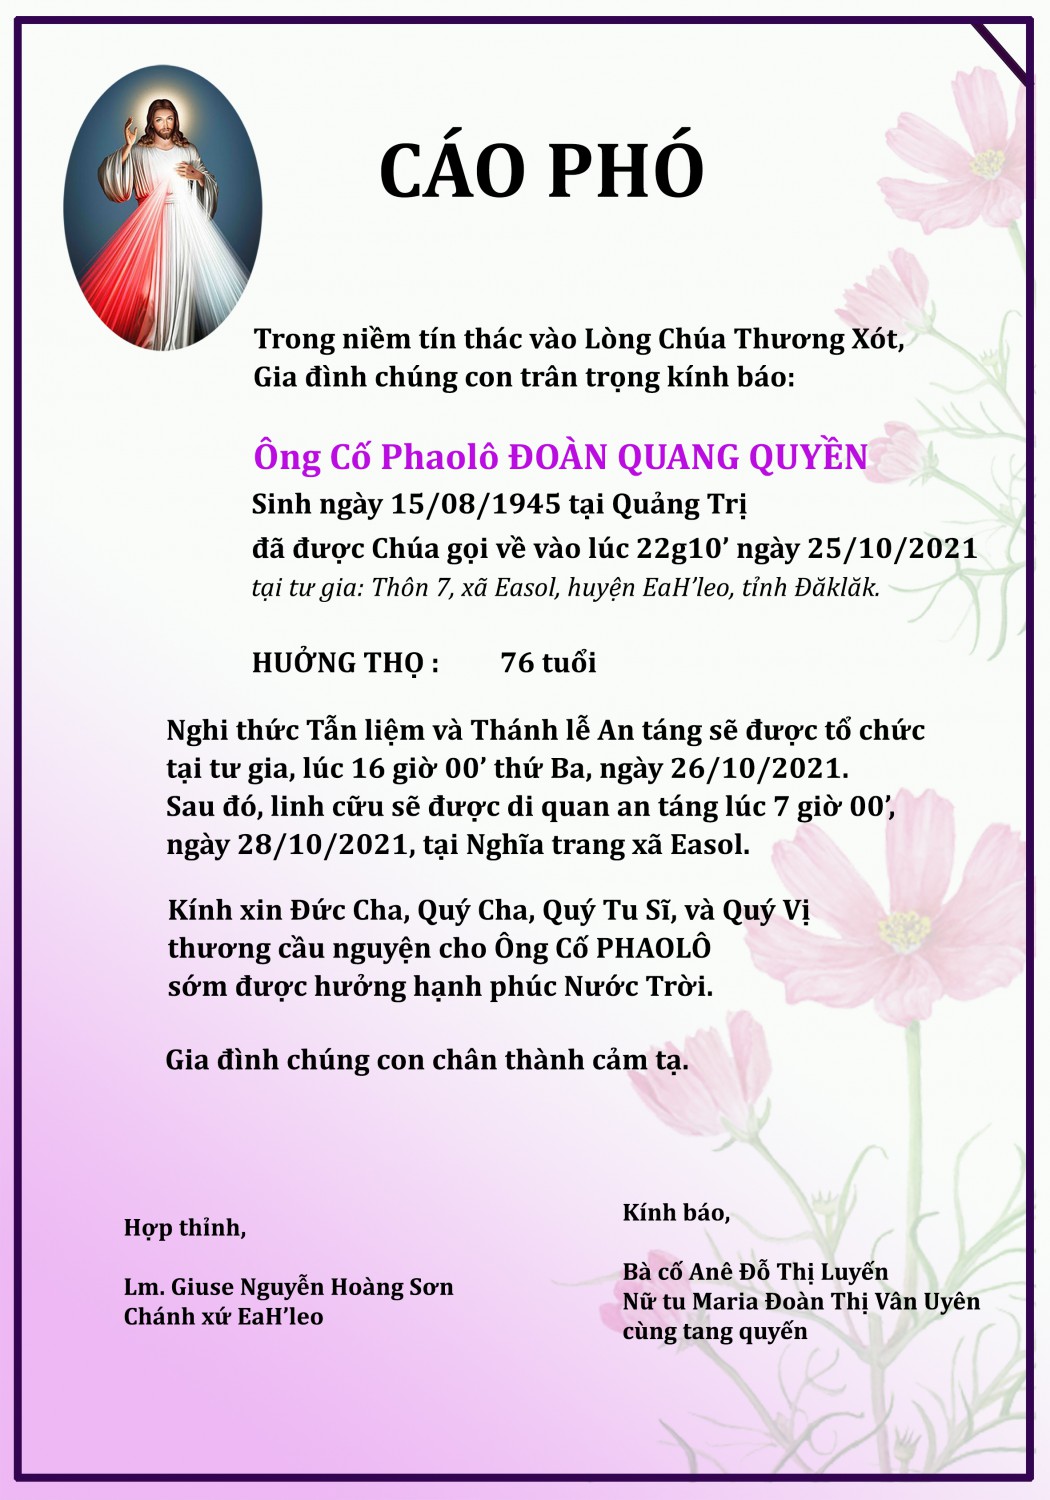 Ông Cố Phaolo Doan Quang Quyen